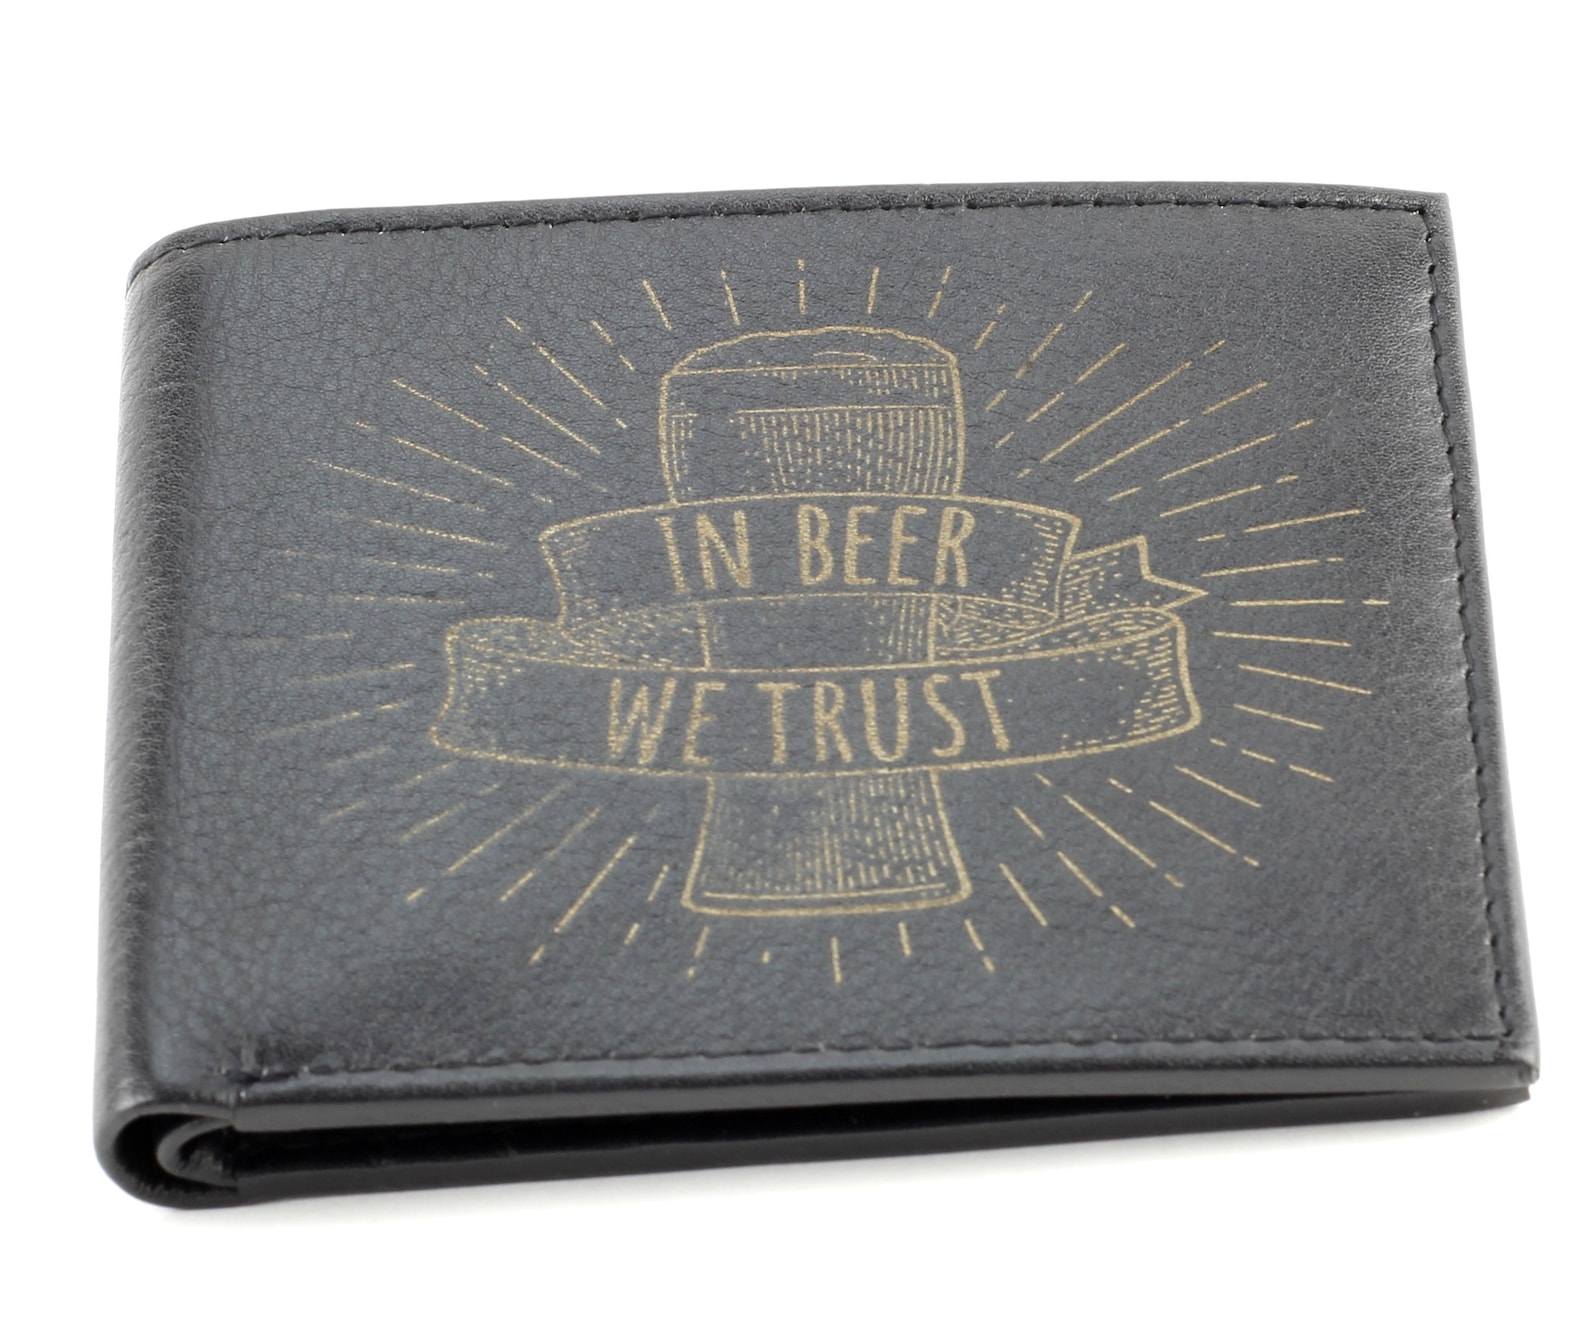 we trust wallet